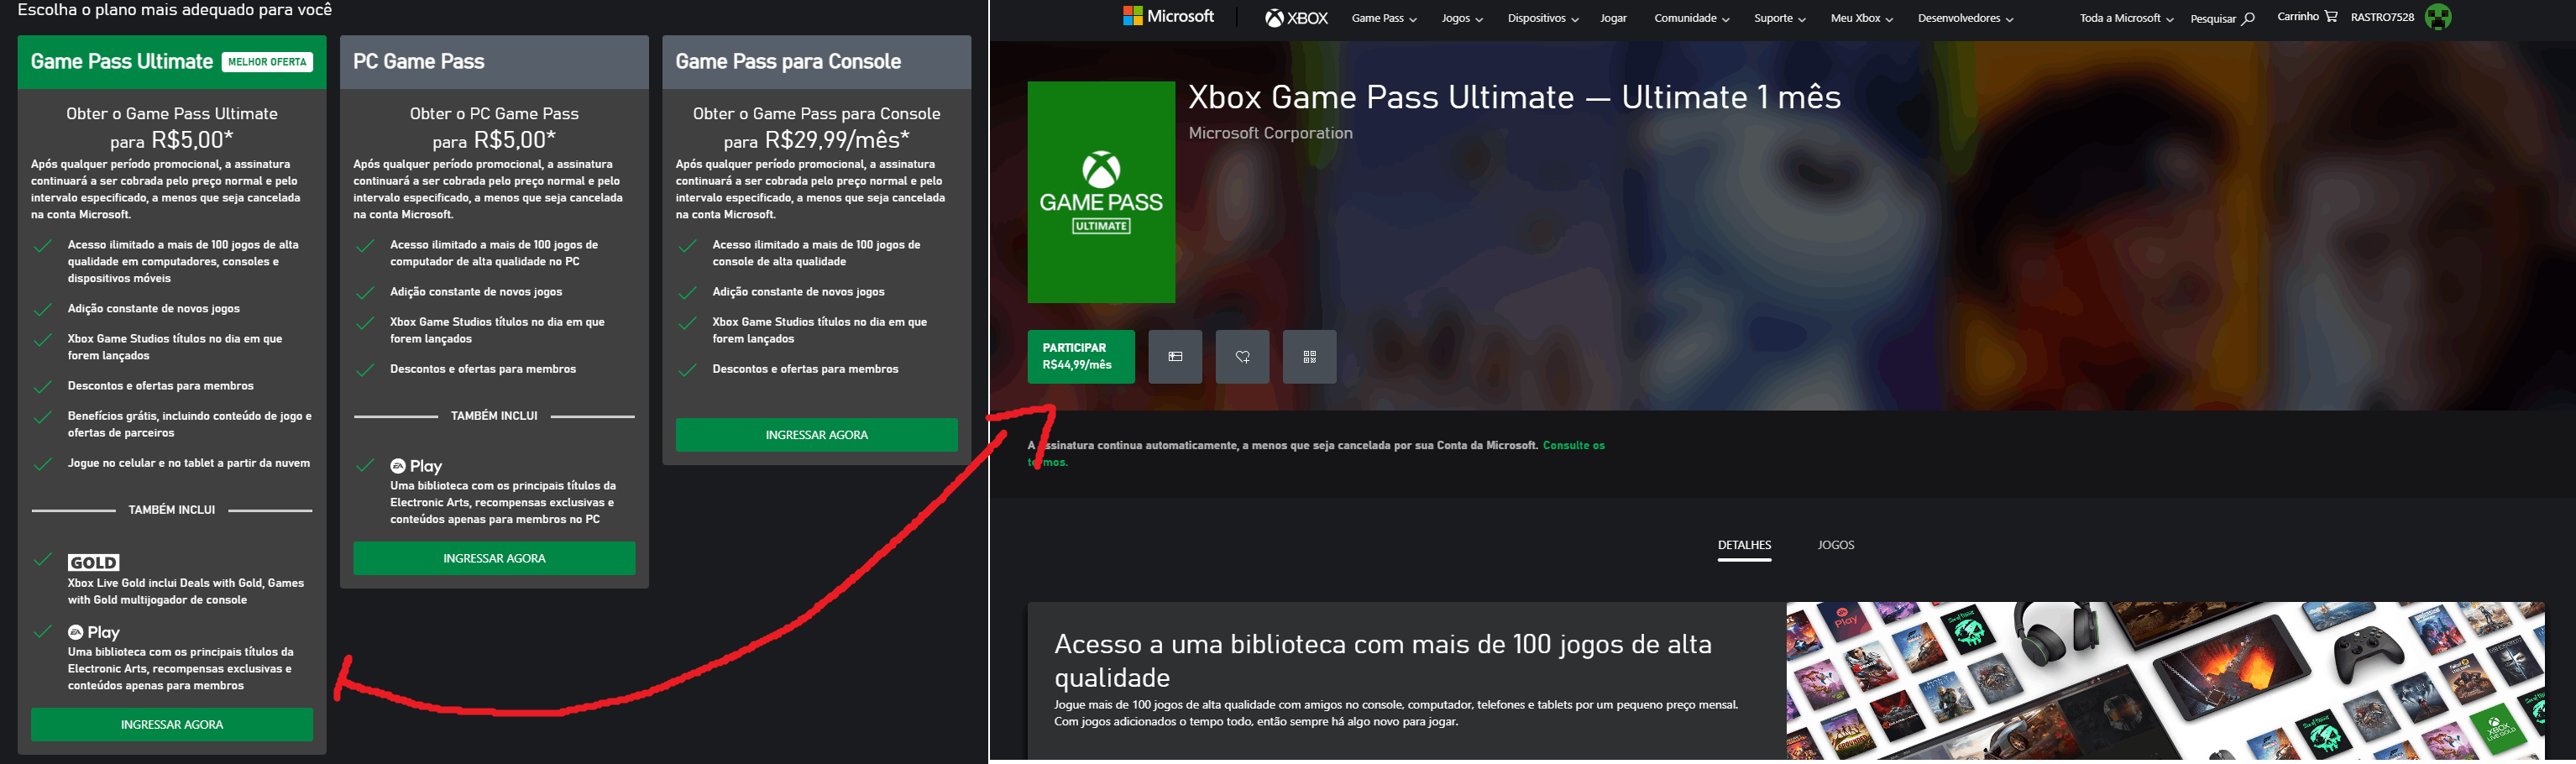 Infelizmente a assinatura do game pass nao esta disponivel neste - Microsoft  Community